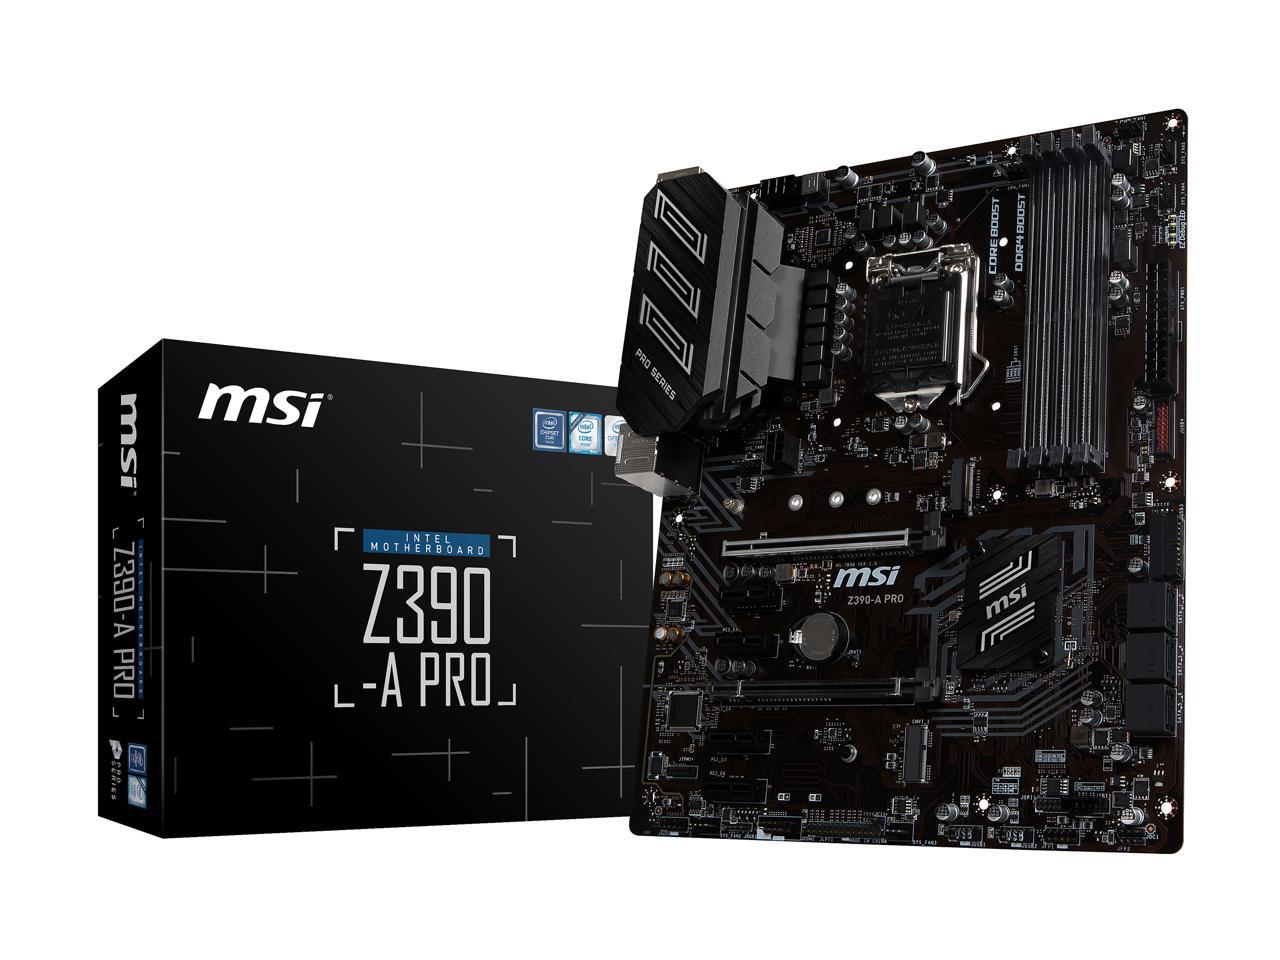 Msi Pro Z390-A Pro Lga 1151 (300 Series) Intel Z390 Sata 6Gb/S Atx Intel Motherboard